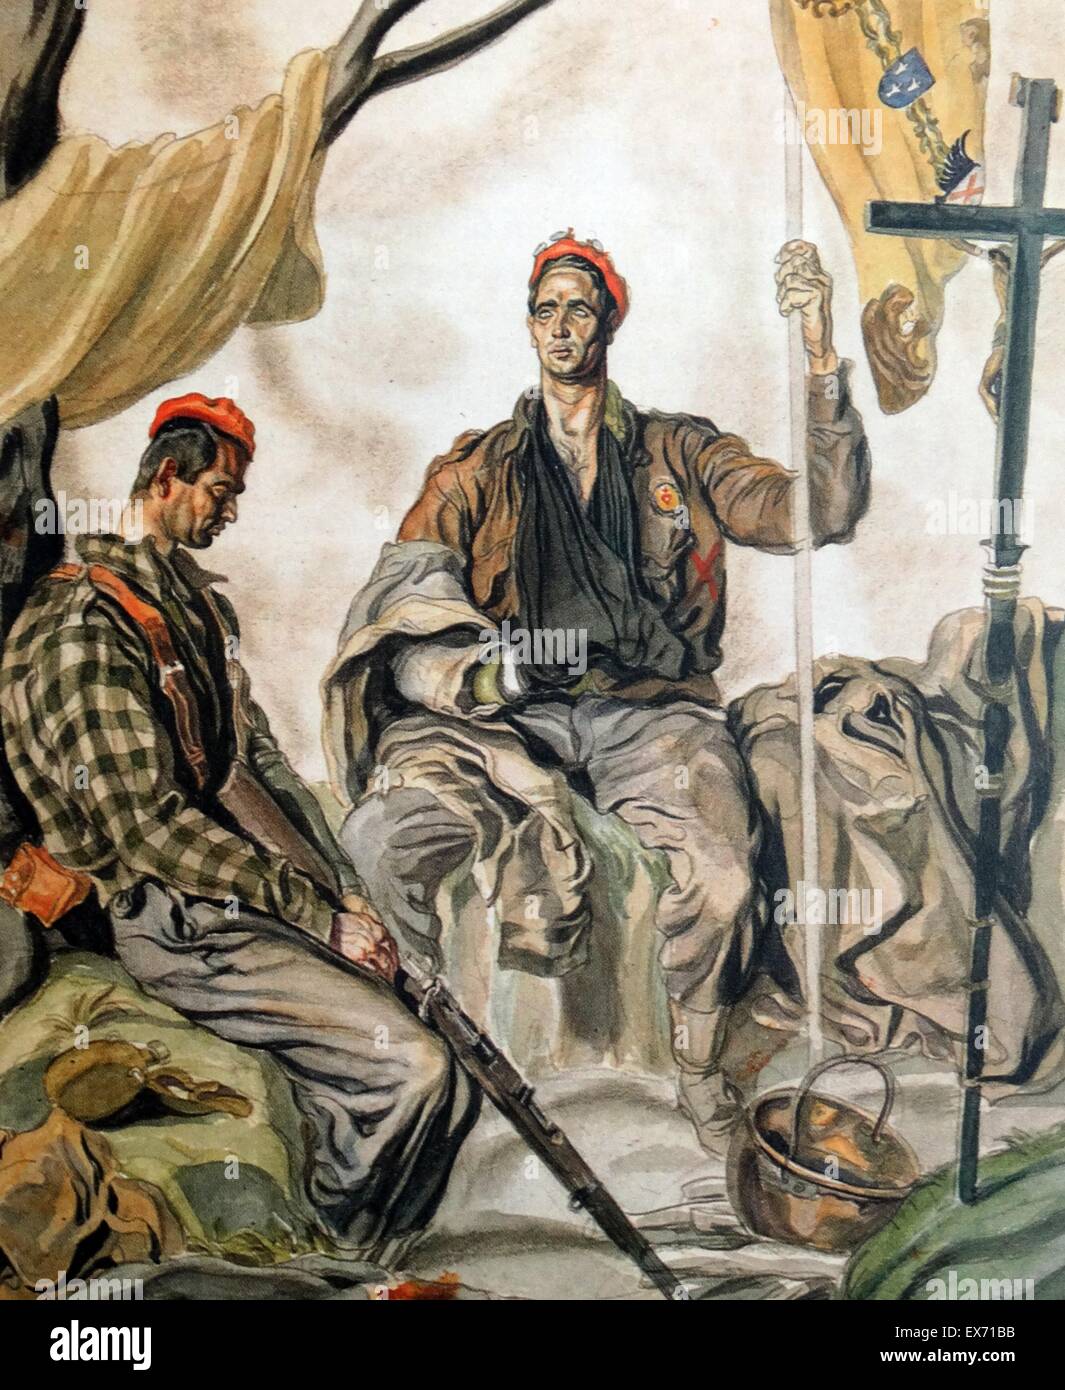 Zwei Carlist Soldaten Illustration von der nationalistischen spanischen Bürgerkrieg Künstler, Carlos Sáenz de Tejada Stockfoto